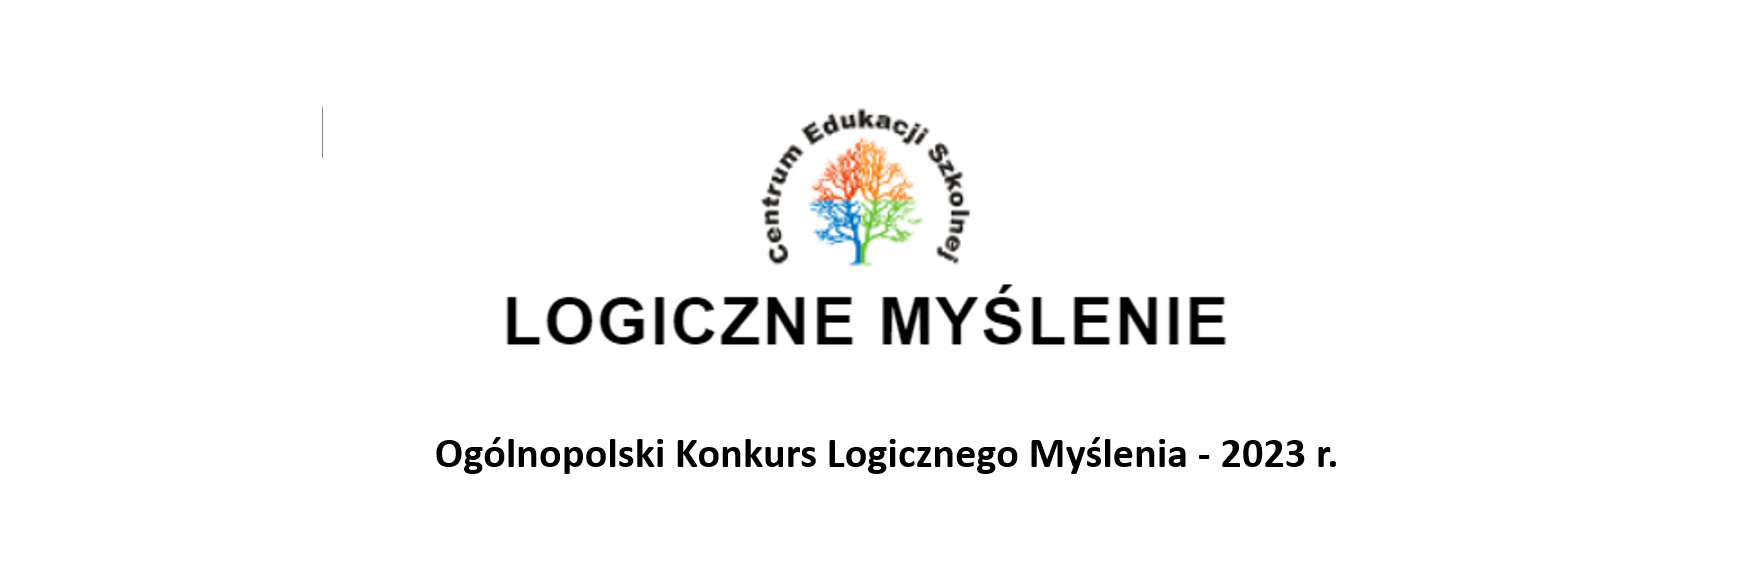 Ogólnopolski Konkurs Logicznego Myślenia - 2023r.